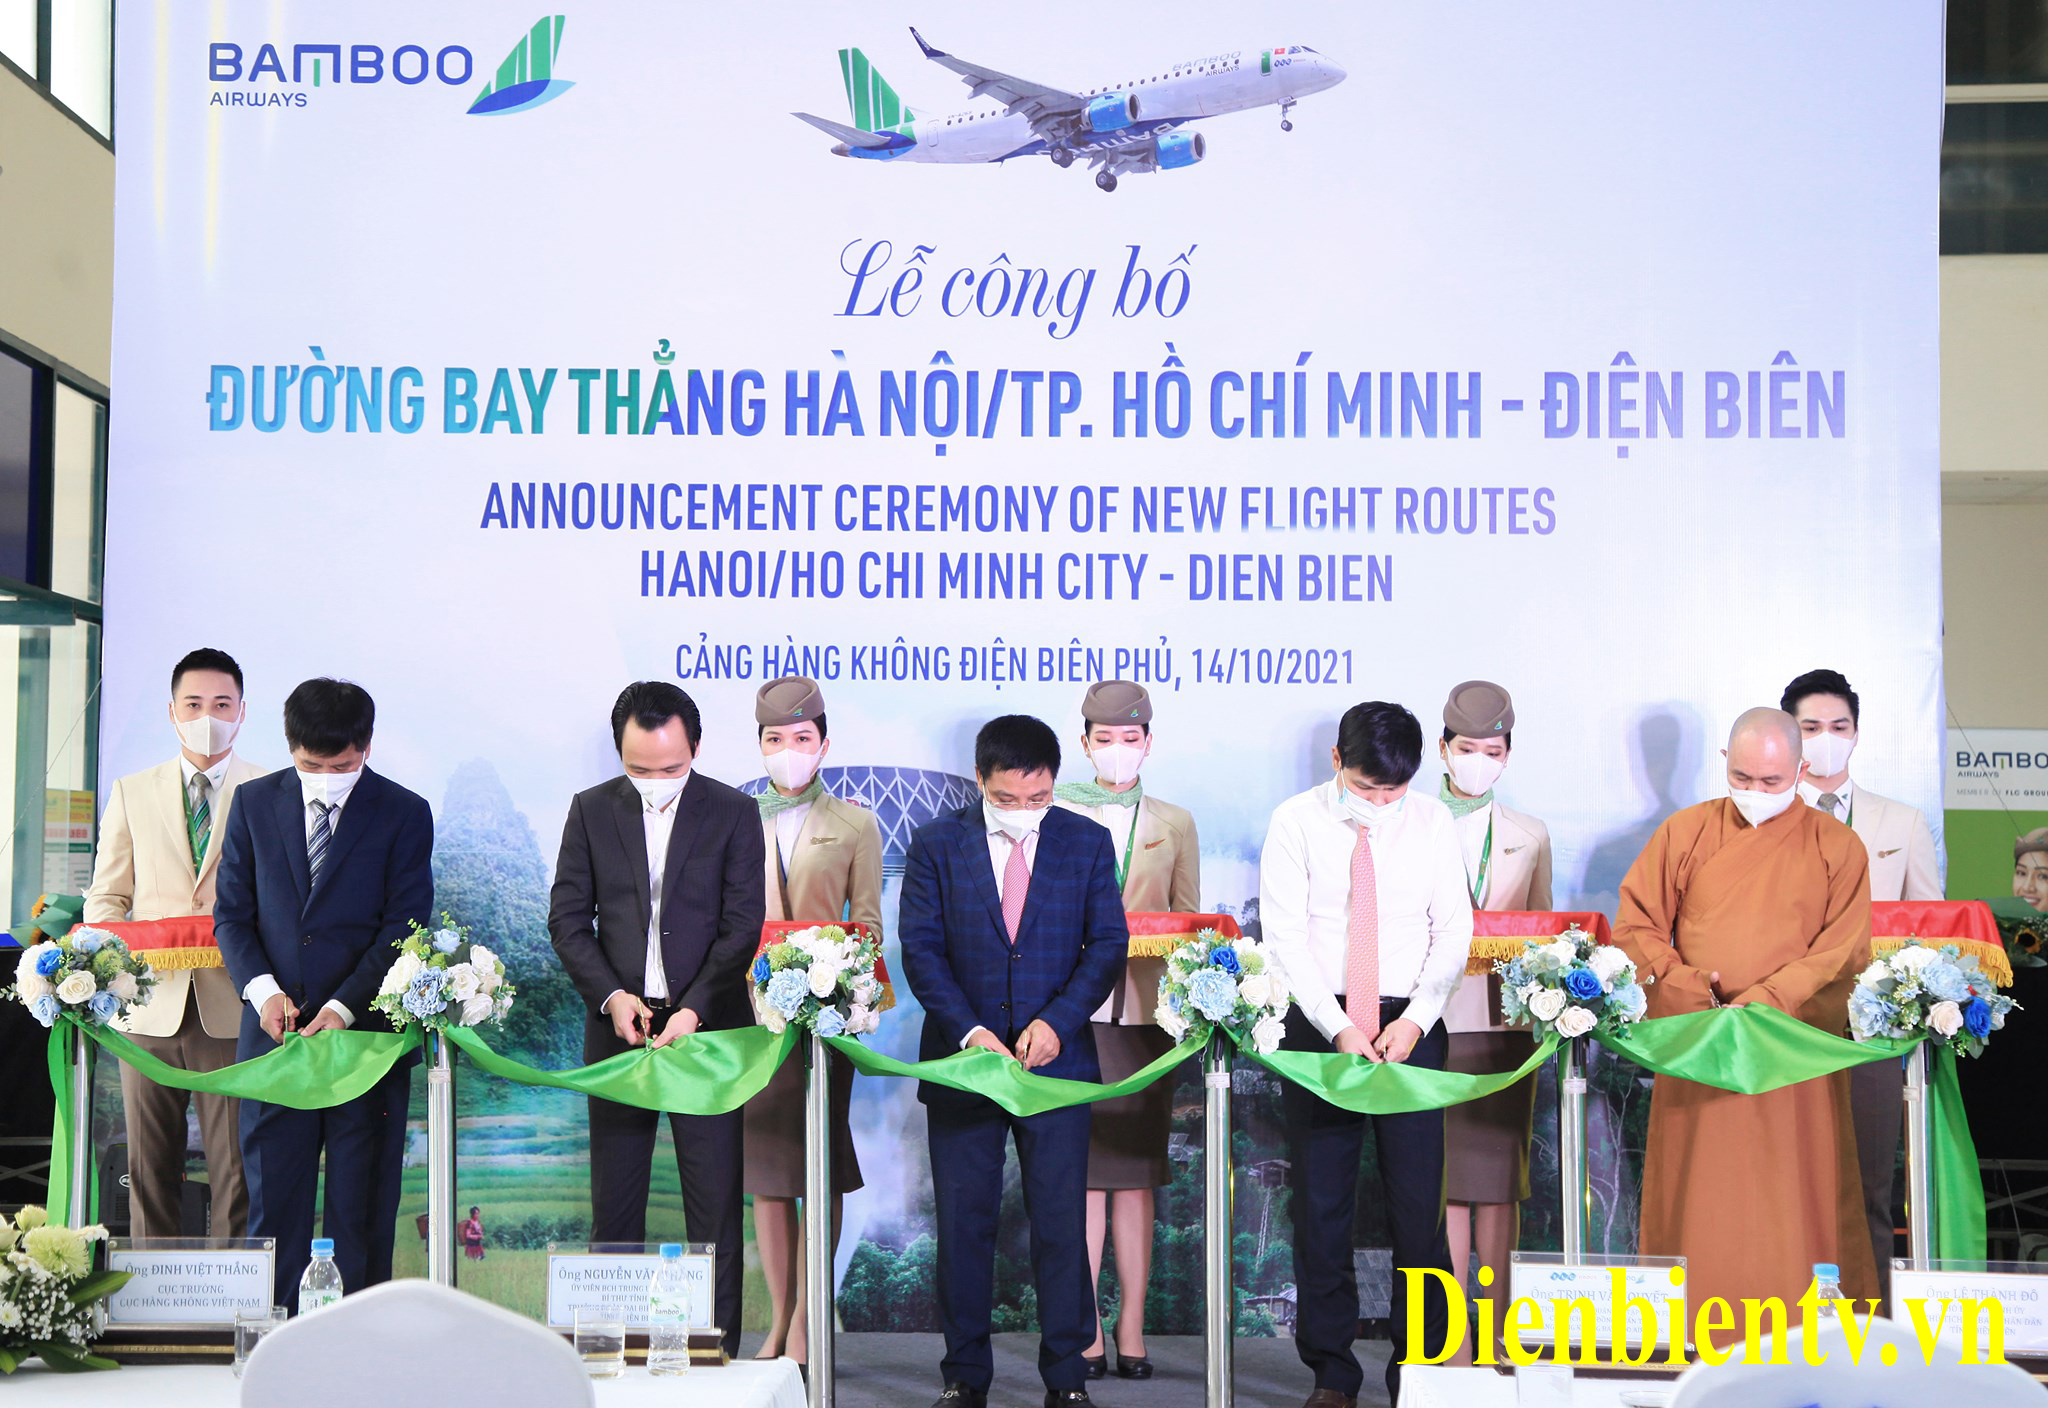 Lãnh đạo tỉnh Điện Biên, lãnh đạo Cục Hàng không Việt Nam và Chủ tịch Tập đoàn FLC băng khai trương đường bay Hà Nội - Điện Biên ngày 14/10/2021.